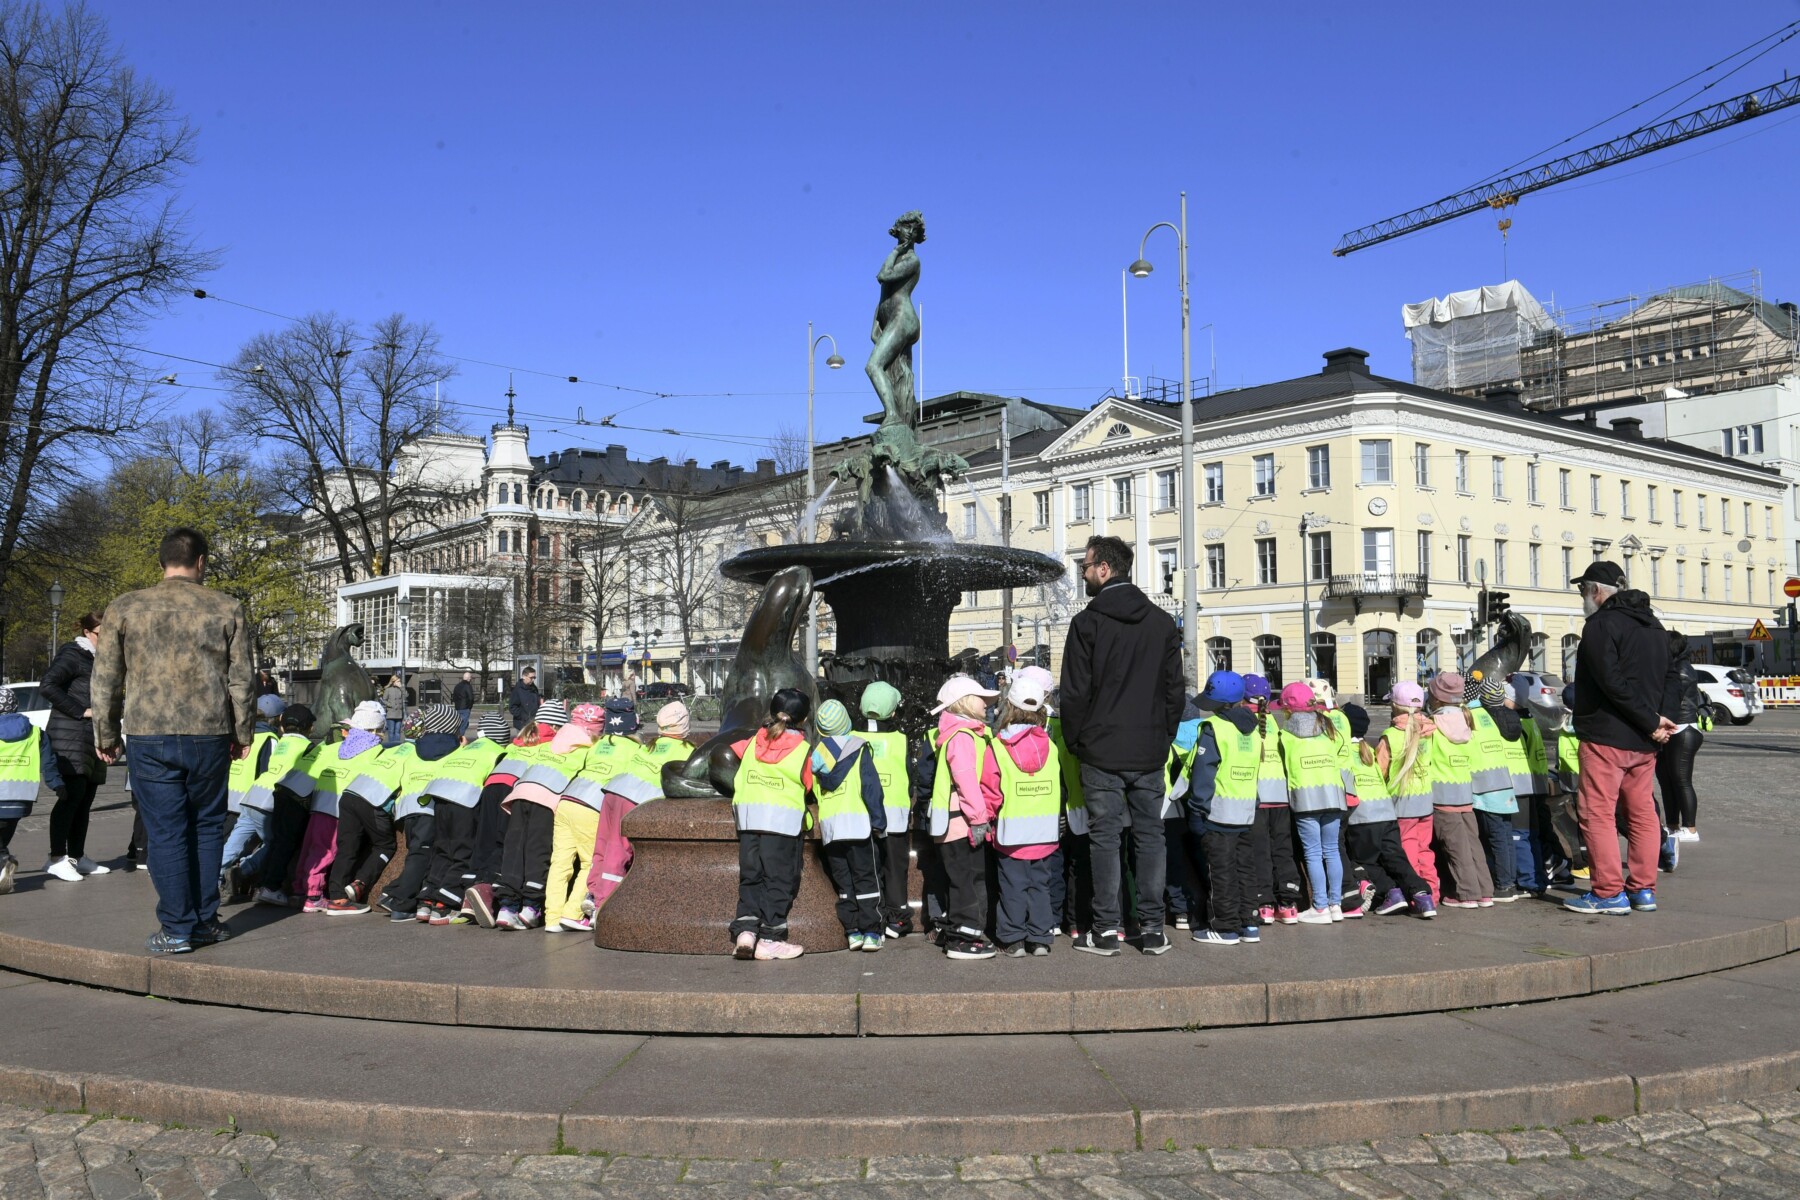 Numa praça com edifícios ao fundo, várias dezenas de crianças e professores estão reunidos em torno de uma estátua de metal sobre um alto pedestal.